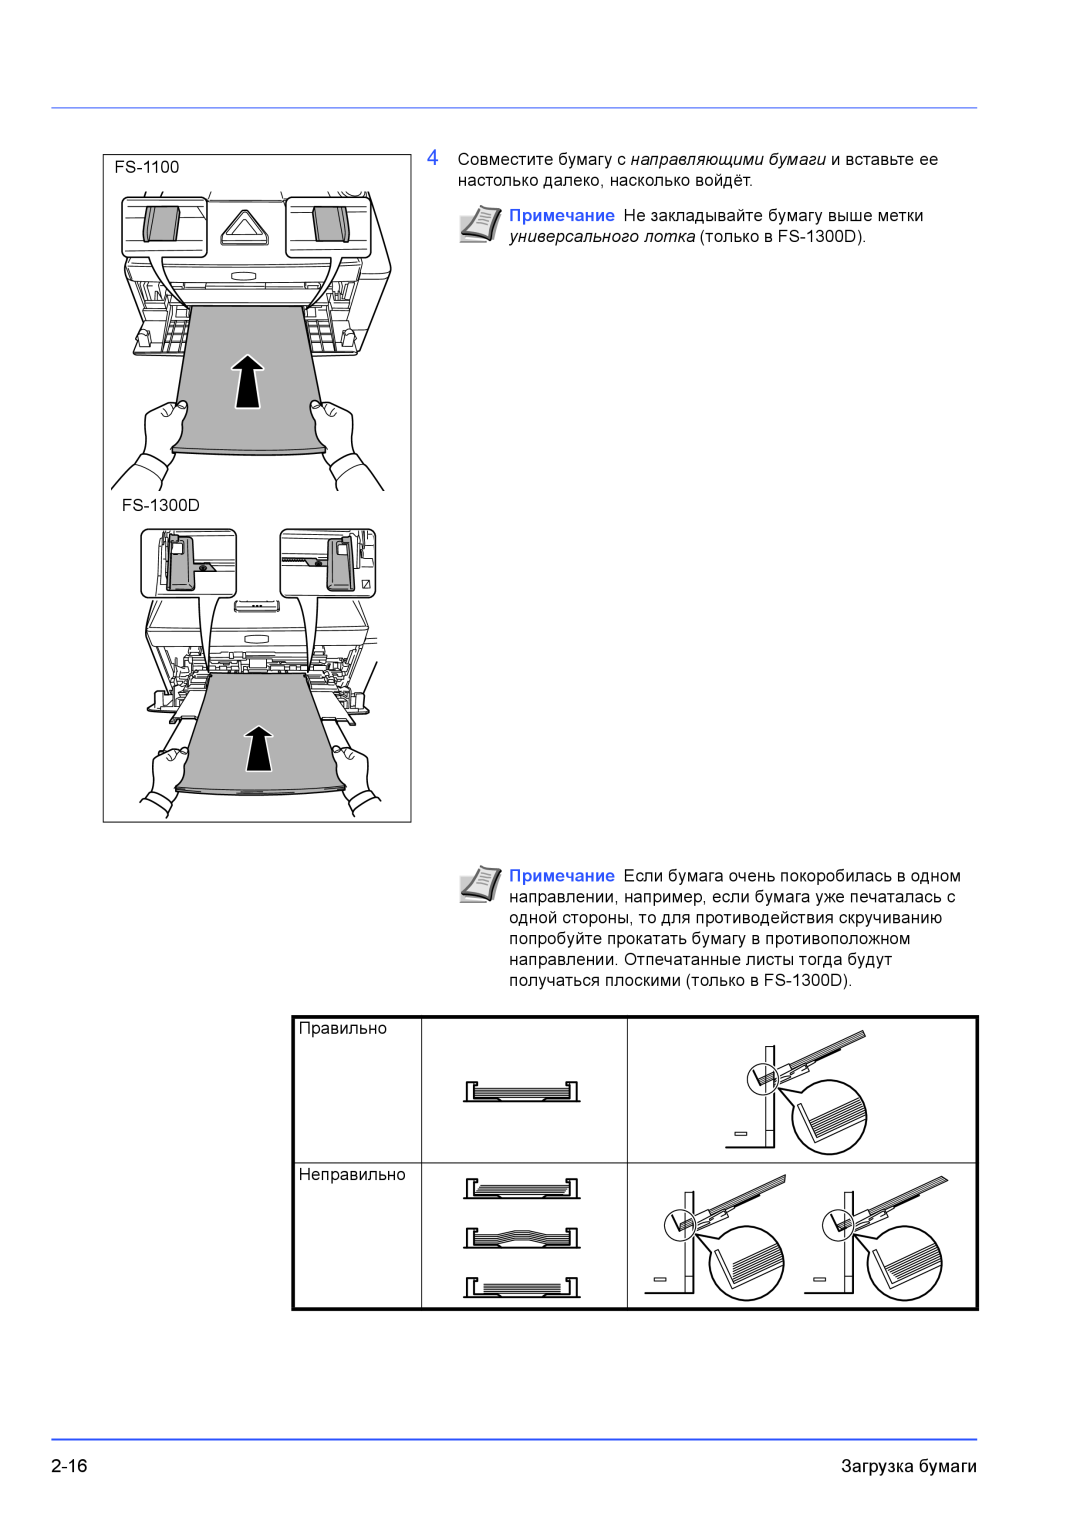 Kyocera FS-1100 manual универсального лотка только в FS-1300D, Примечание Если бумага очень покоробилась в одном 